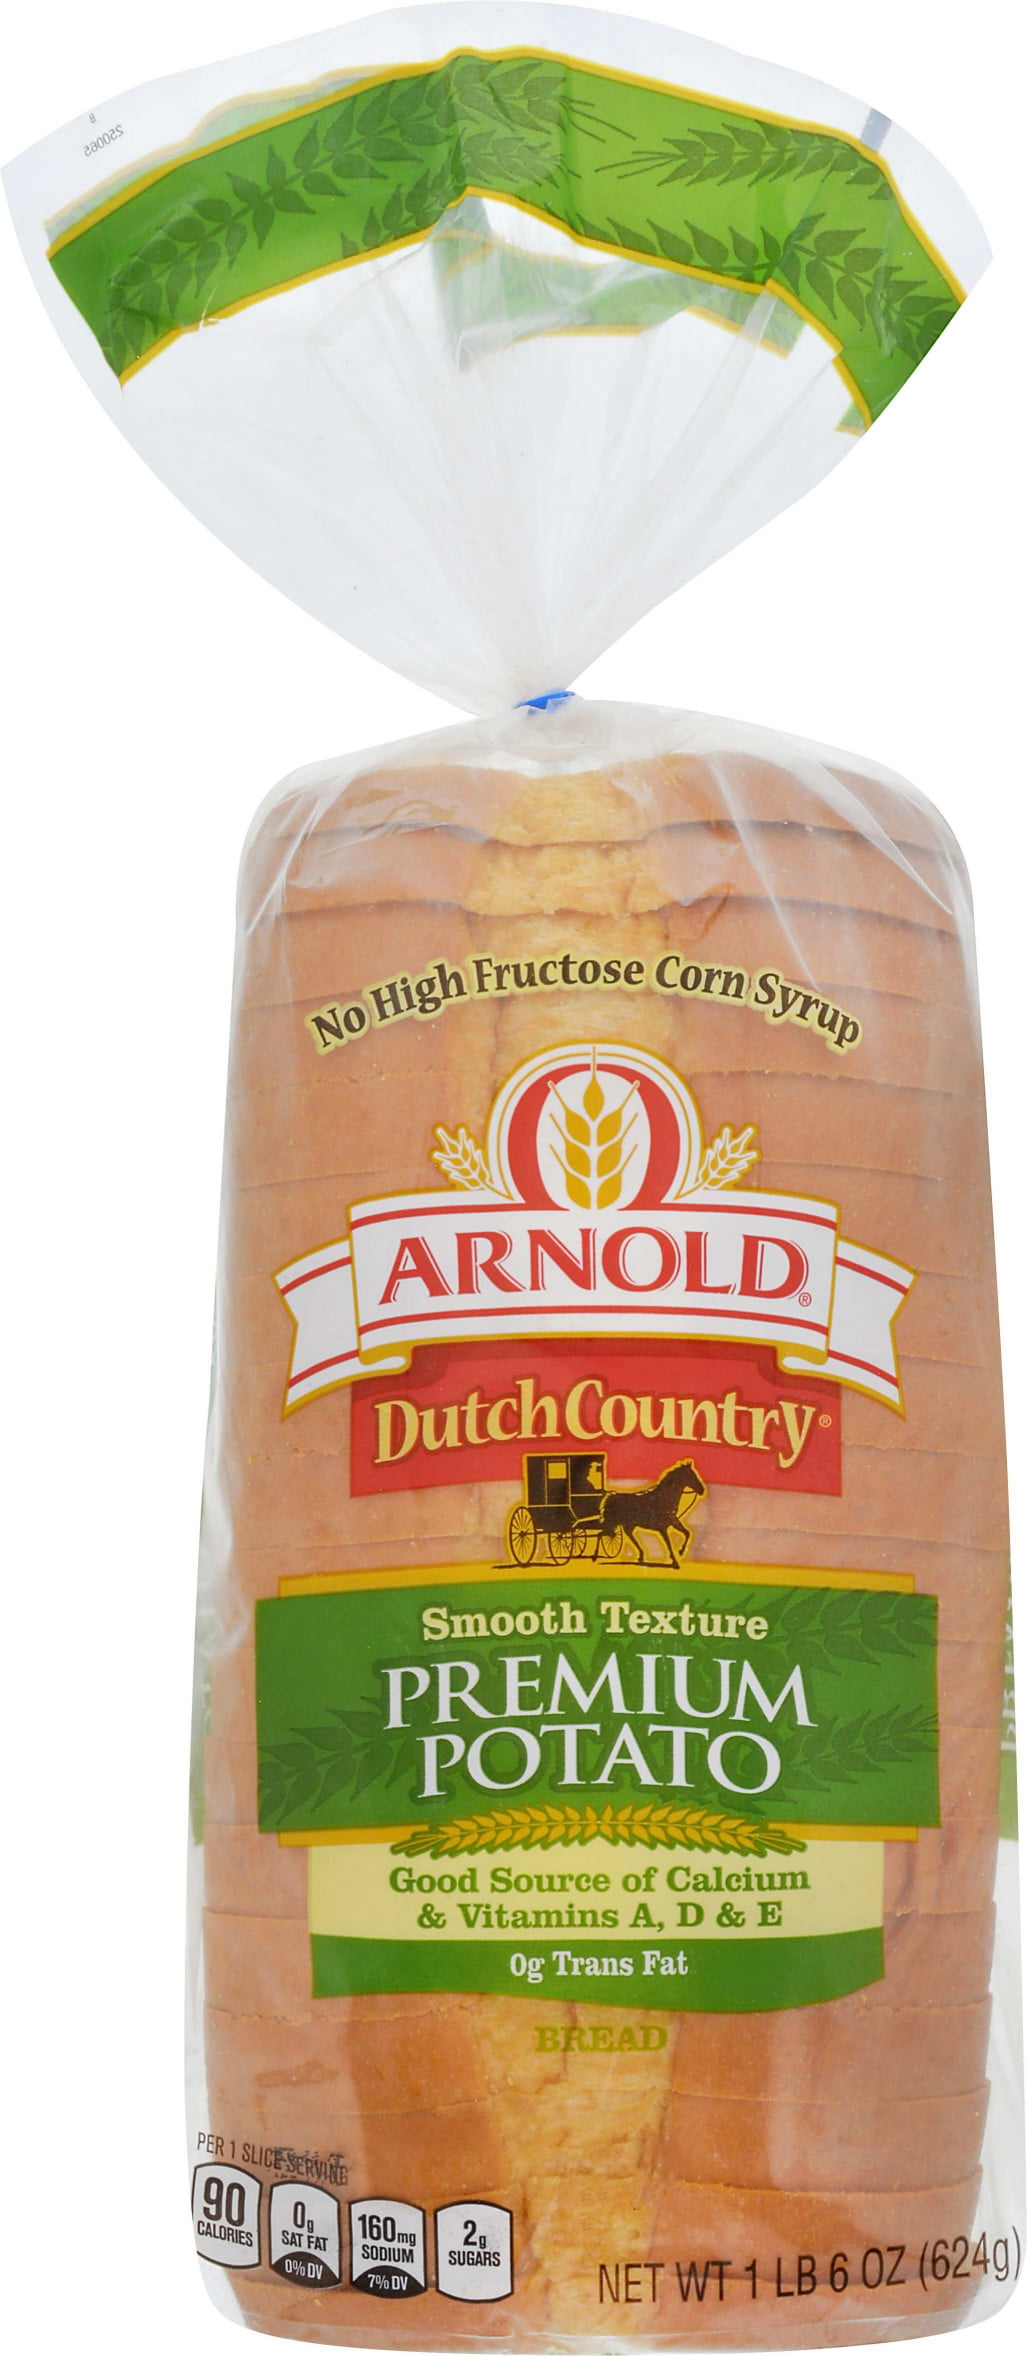 Arnold Dutch Country Potato Bread 22 Oz Walmart Com Walmart Com,White Asparagus Pantone